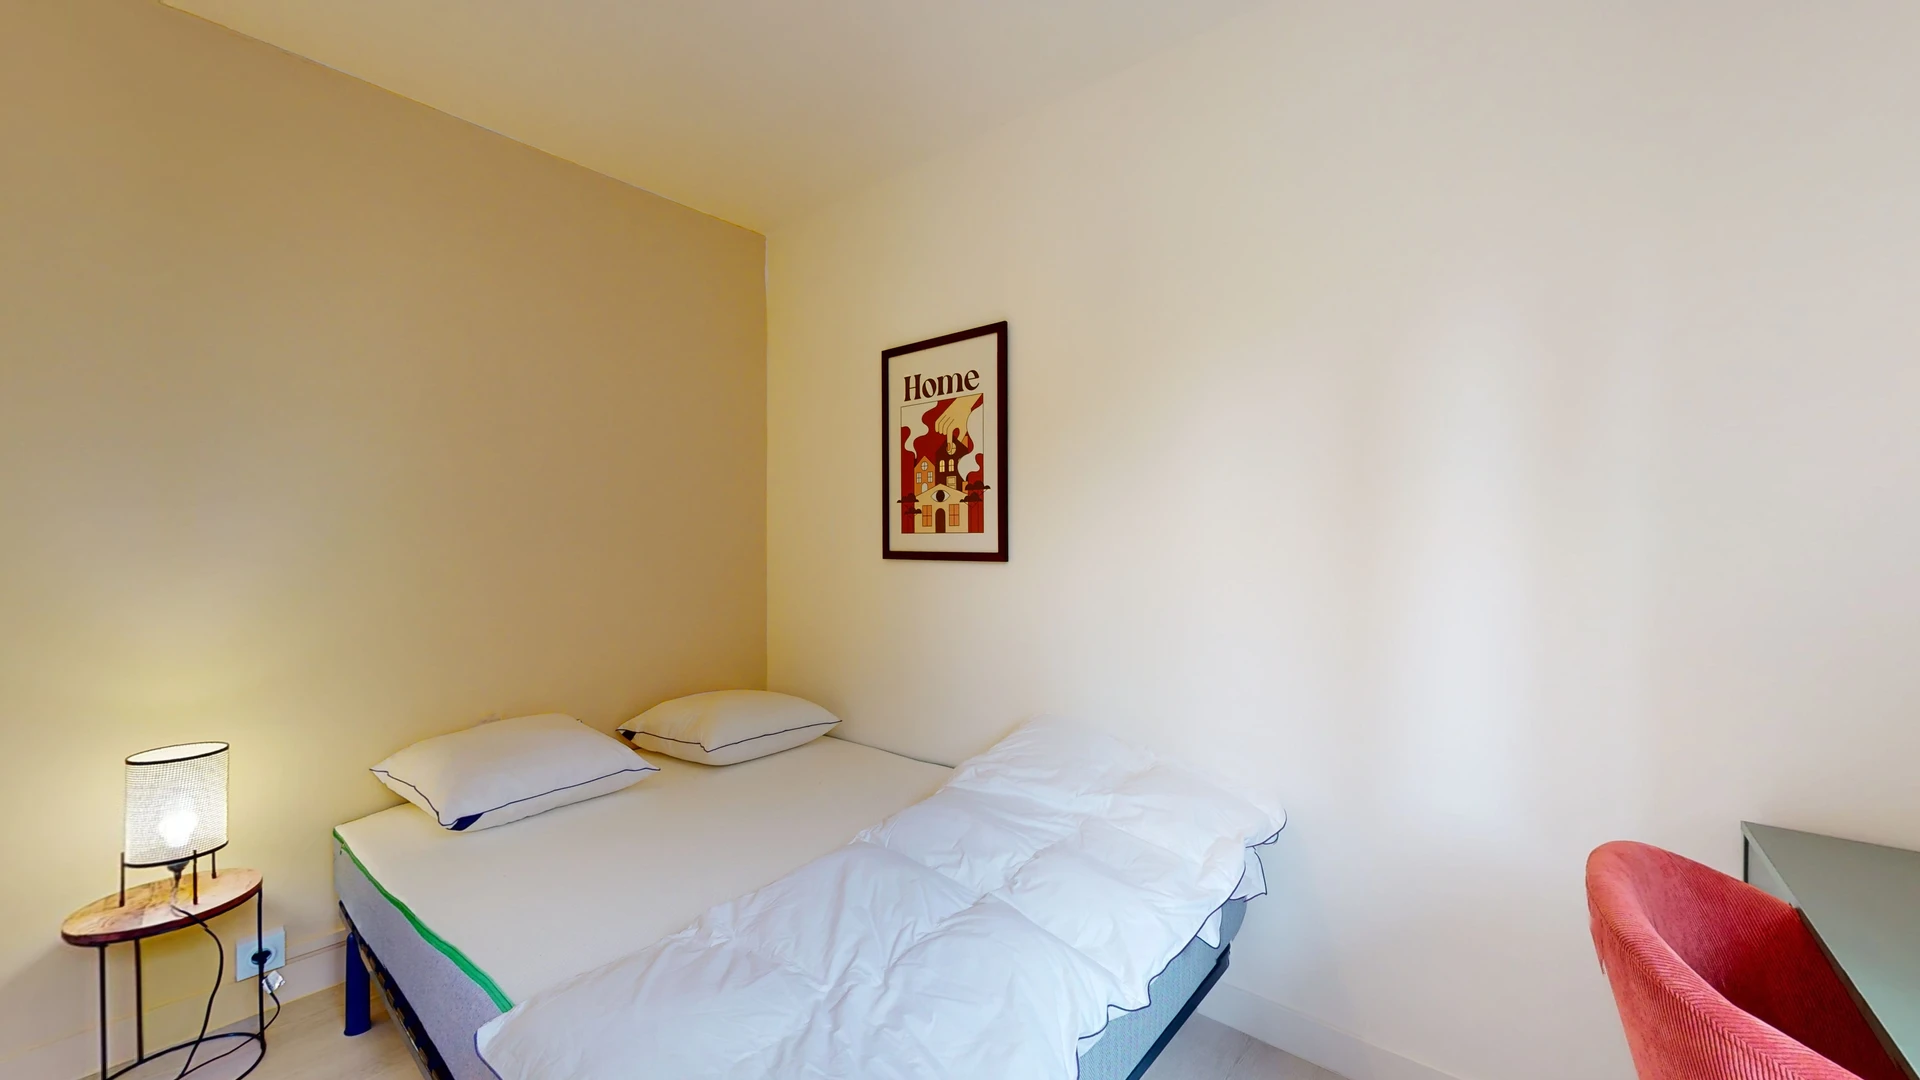 Chambre à louer dans un appartement en colocation à Montpellier